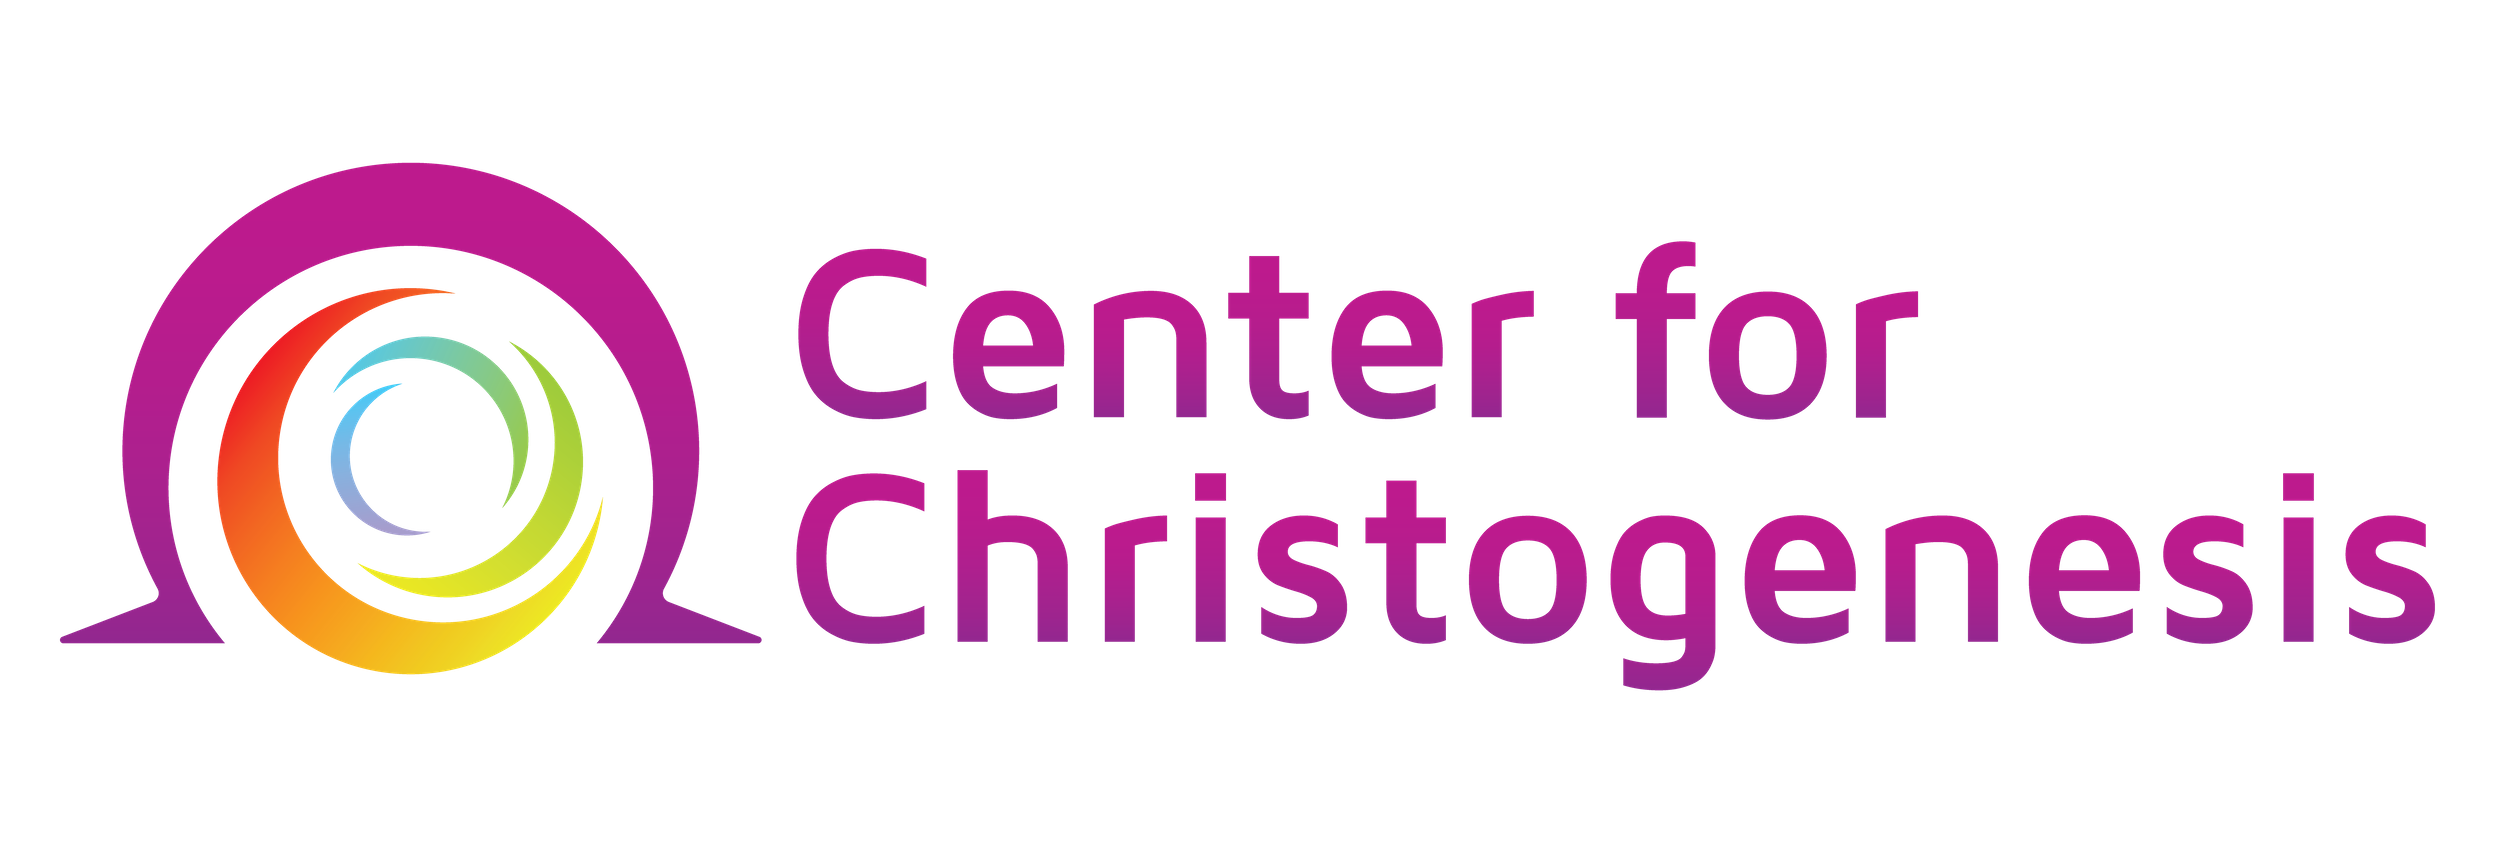 Center for Christogenesis